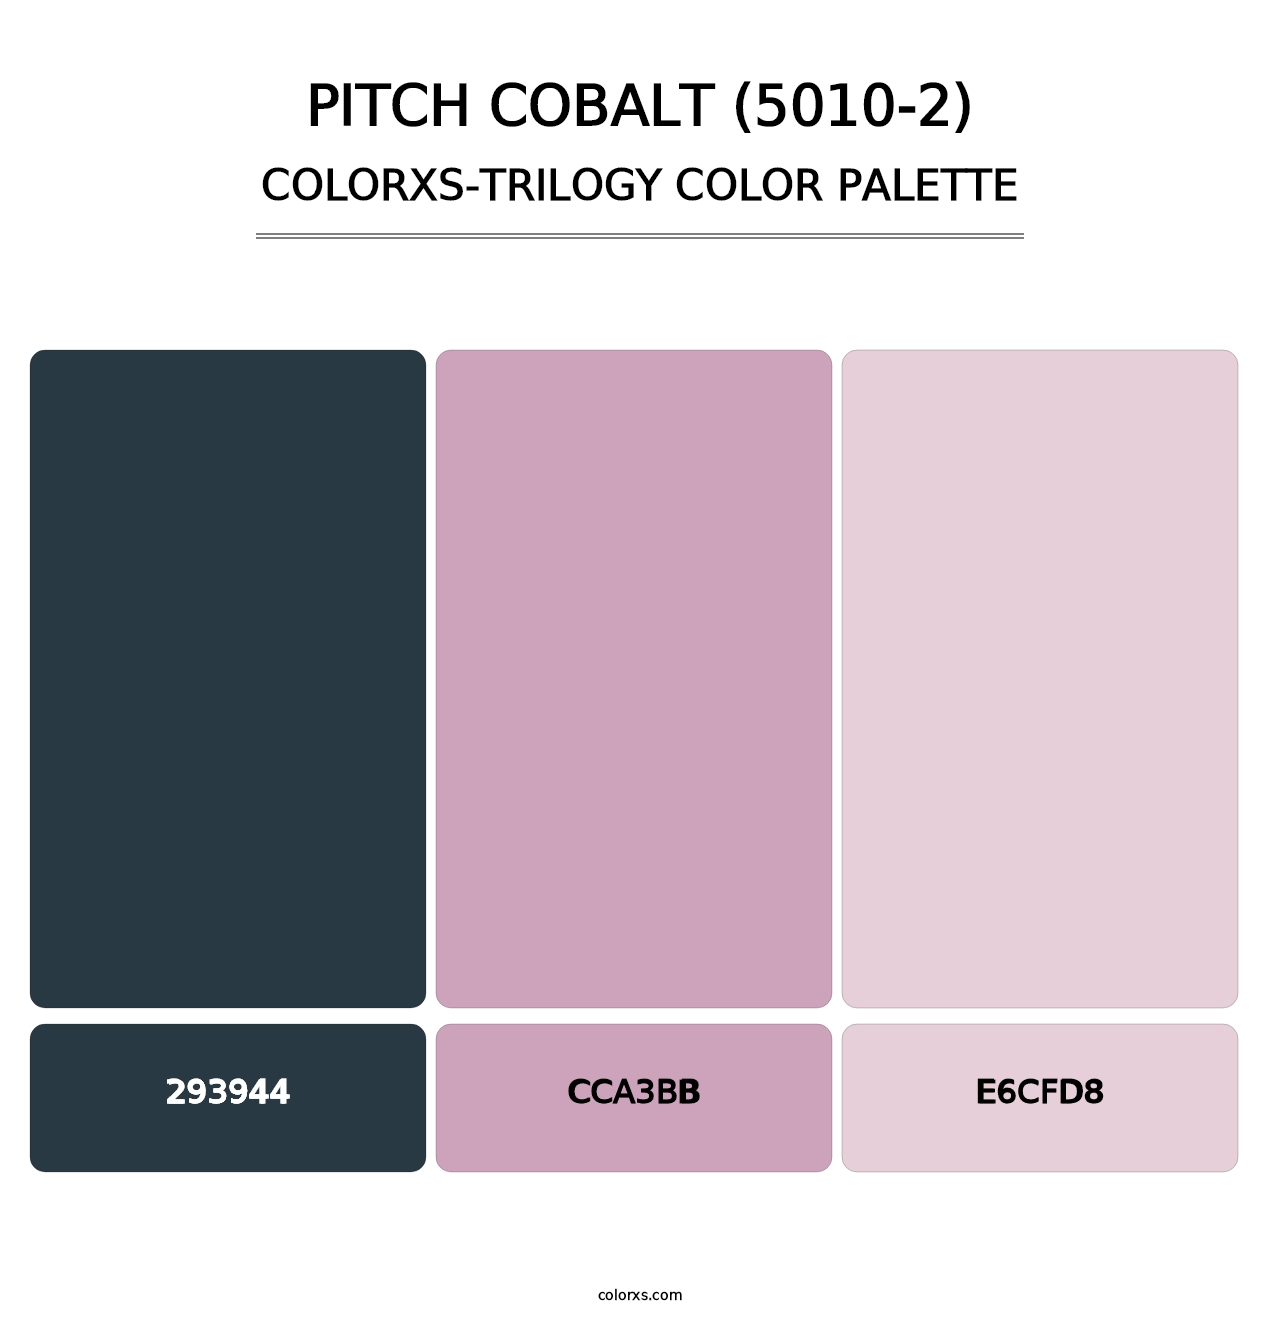 Pitch Cobalt (5010-2) - Colorxs Trilogy Palette